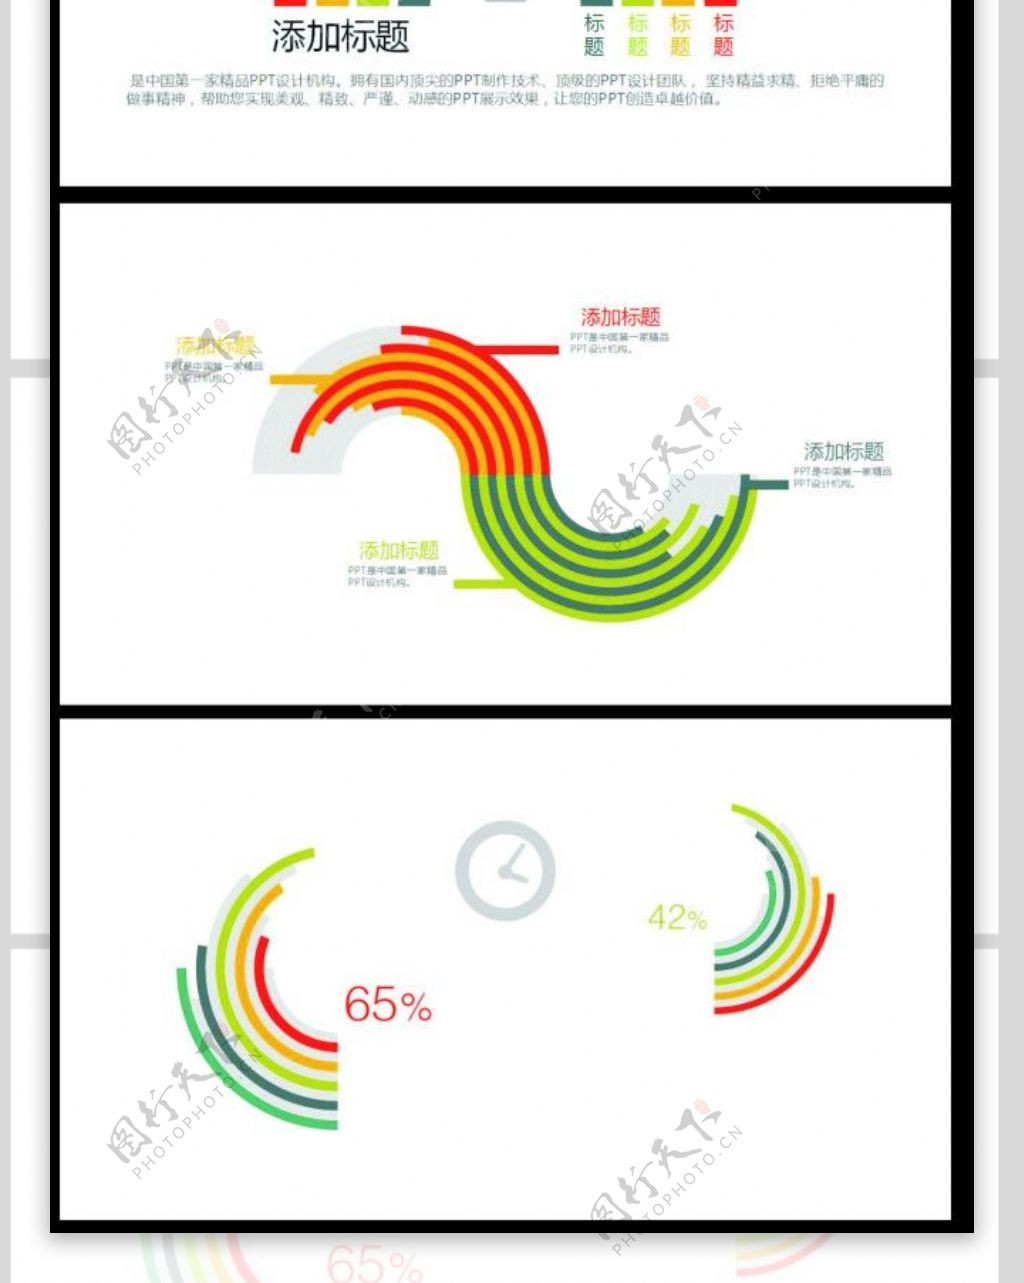 6套彩虹圈数据分析ppt图表打包下载